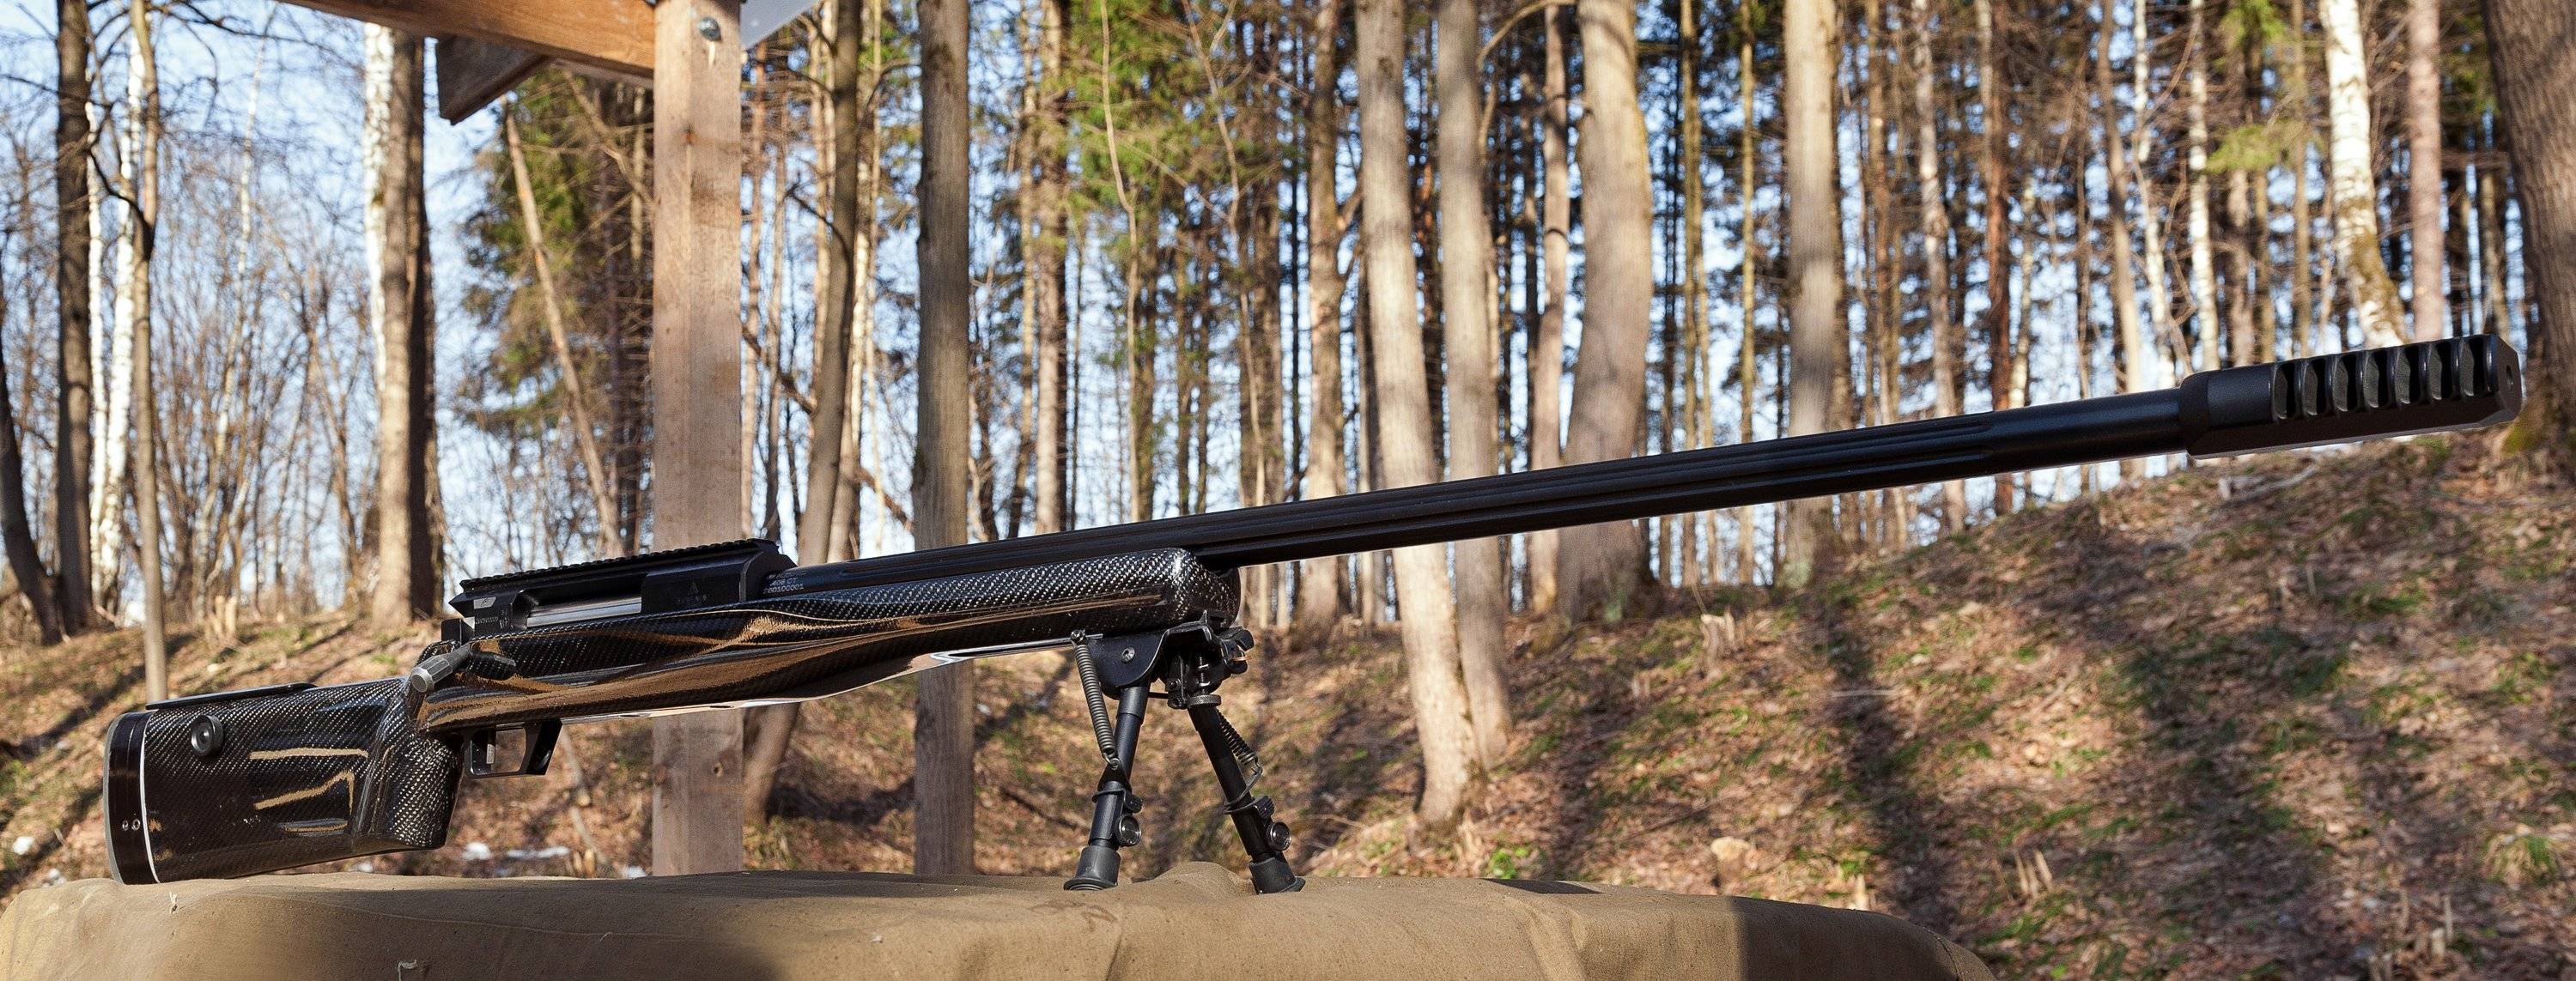 Свлк-14с сумрак - самая дальнобойная снайперская винтовка в мире, которая изобретена в россии и стреляет на 4 000 метров